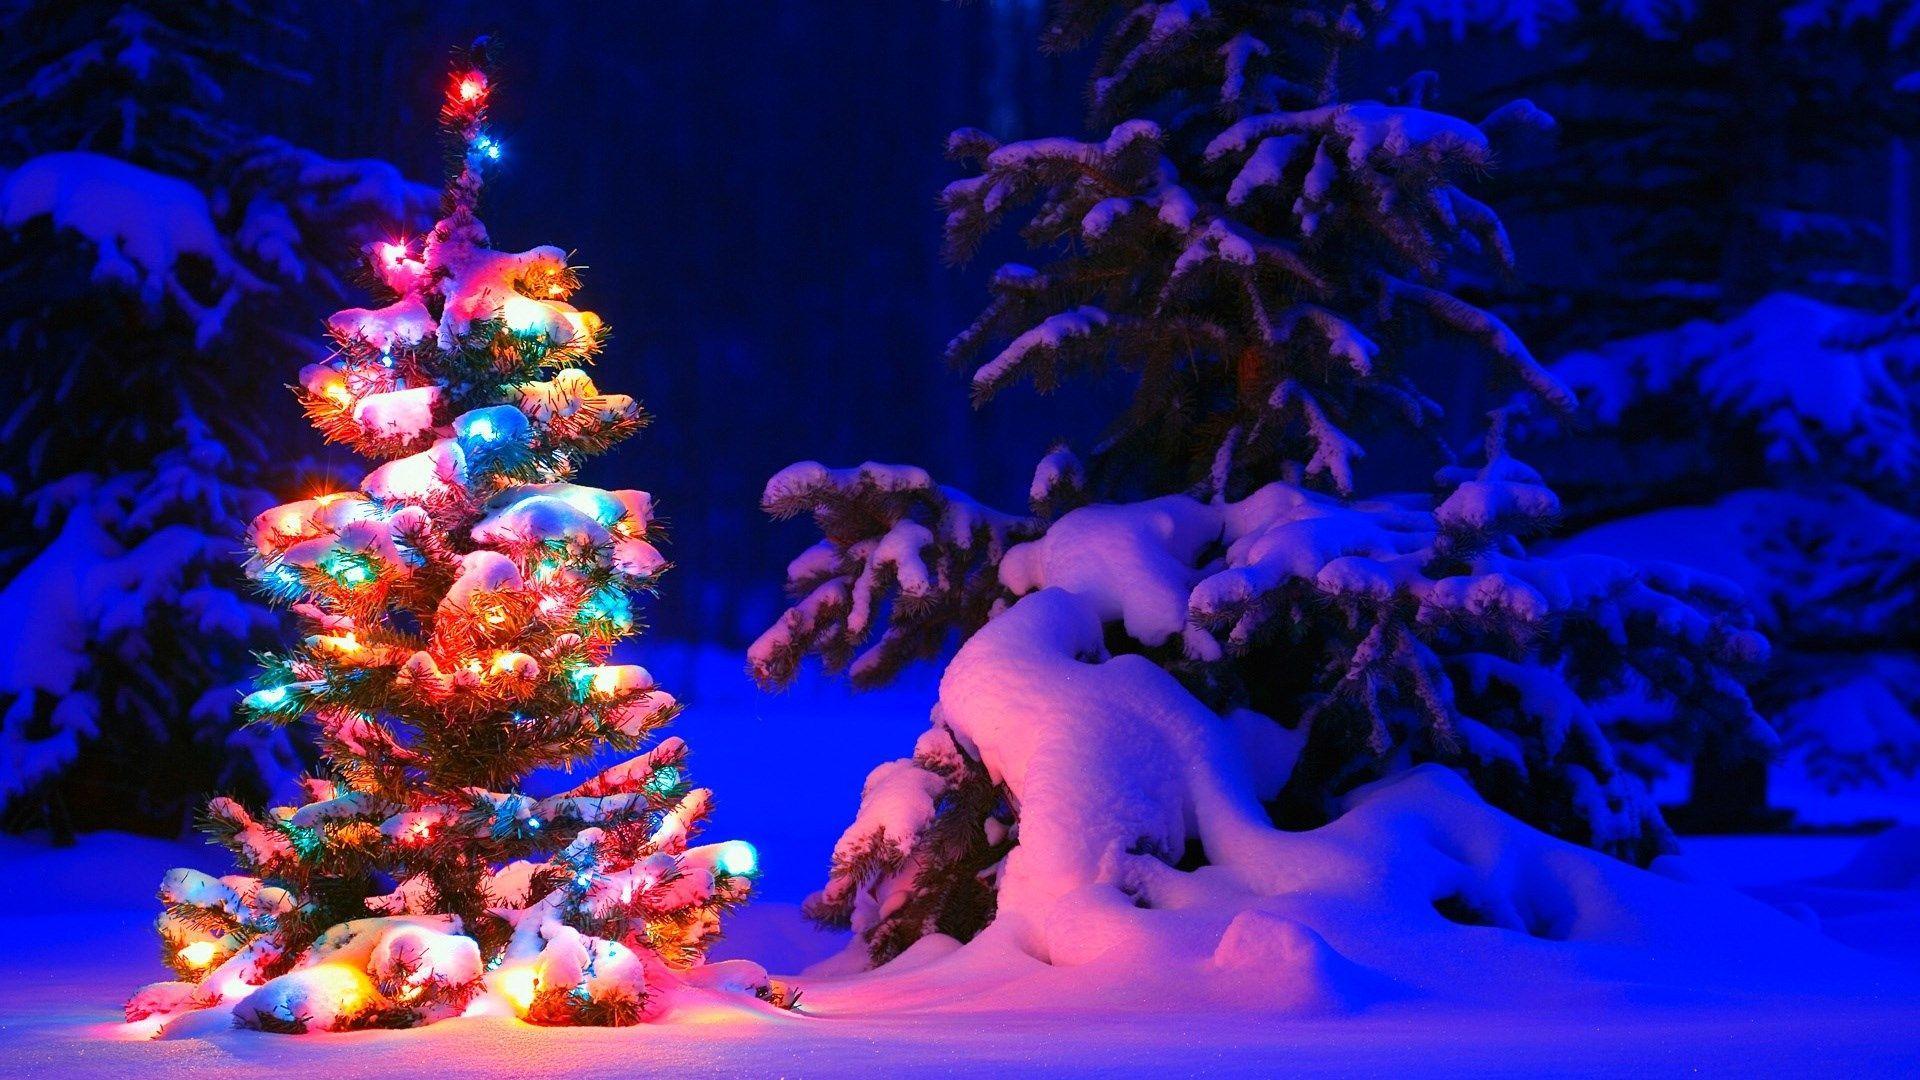 Hãy khám phá hình nền Noel 1920x1080 đầy màu sắc và ấm áp để đón mừng mùa lễ hội sắp tới! Hình ảnh tuyệt đẹp này sẽ đưa bạn và gia đình vào không khí đầy ấm áp của Giáng Sinh.